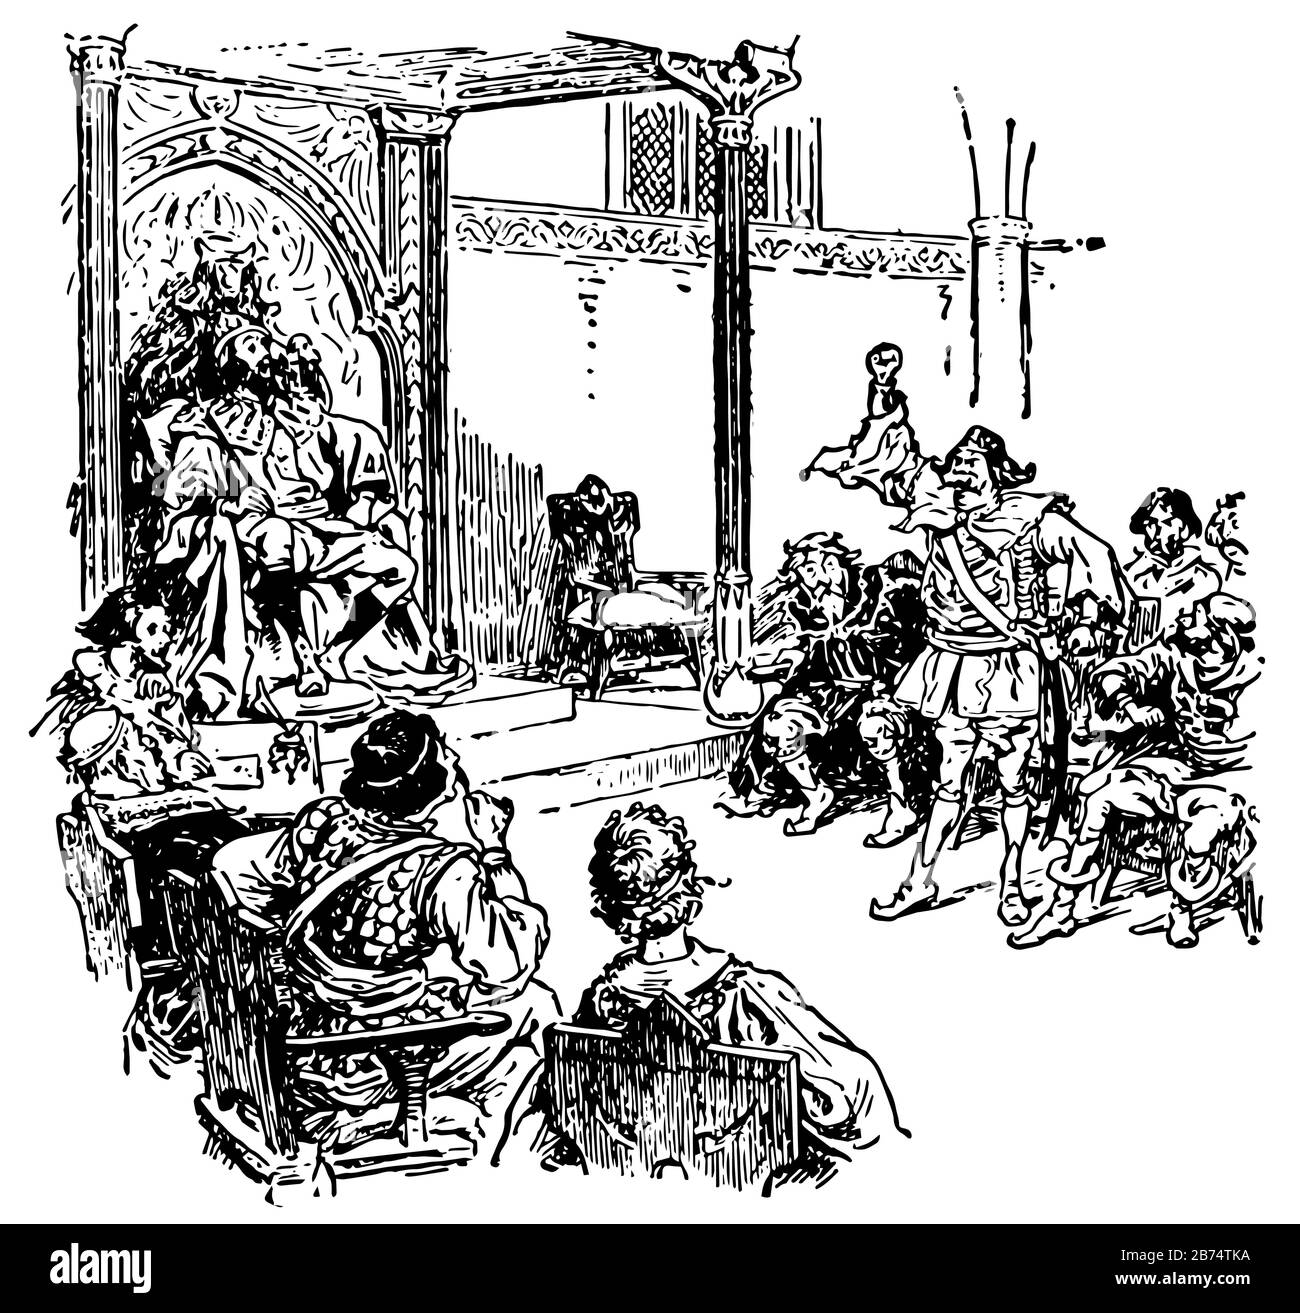 Empereur et Cour, cette scène montre un empereur et sa cour, un empereur assis sur sa chaise et ses soldats devant lui, ligne vintage dessin o Illustration de Vecteur